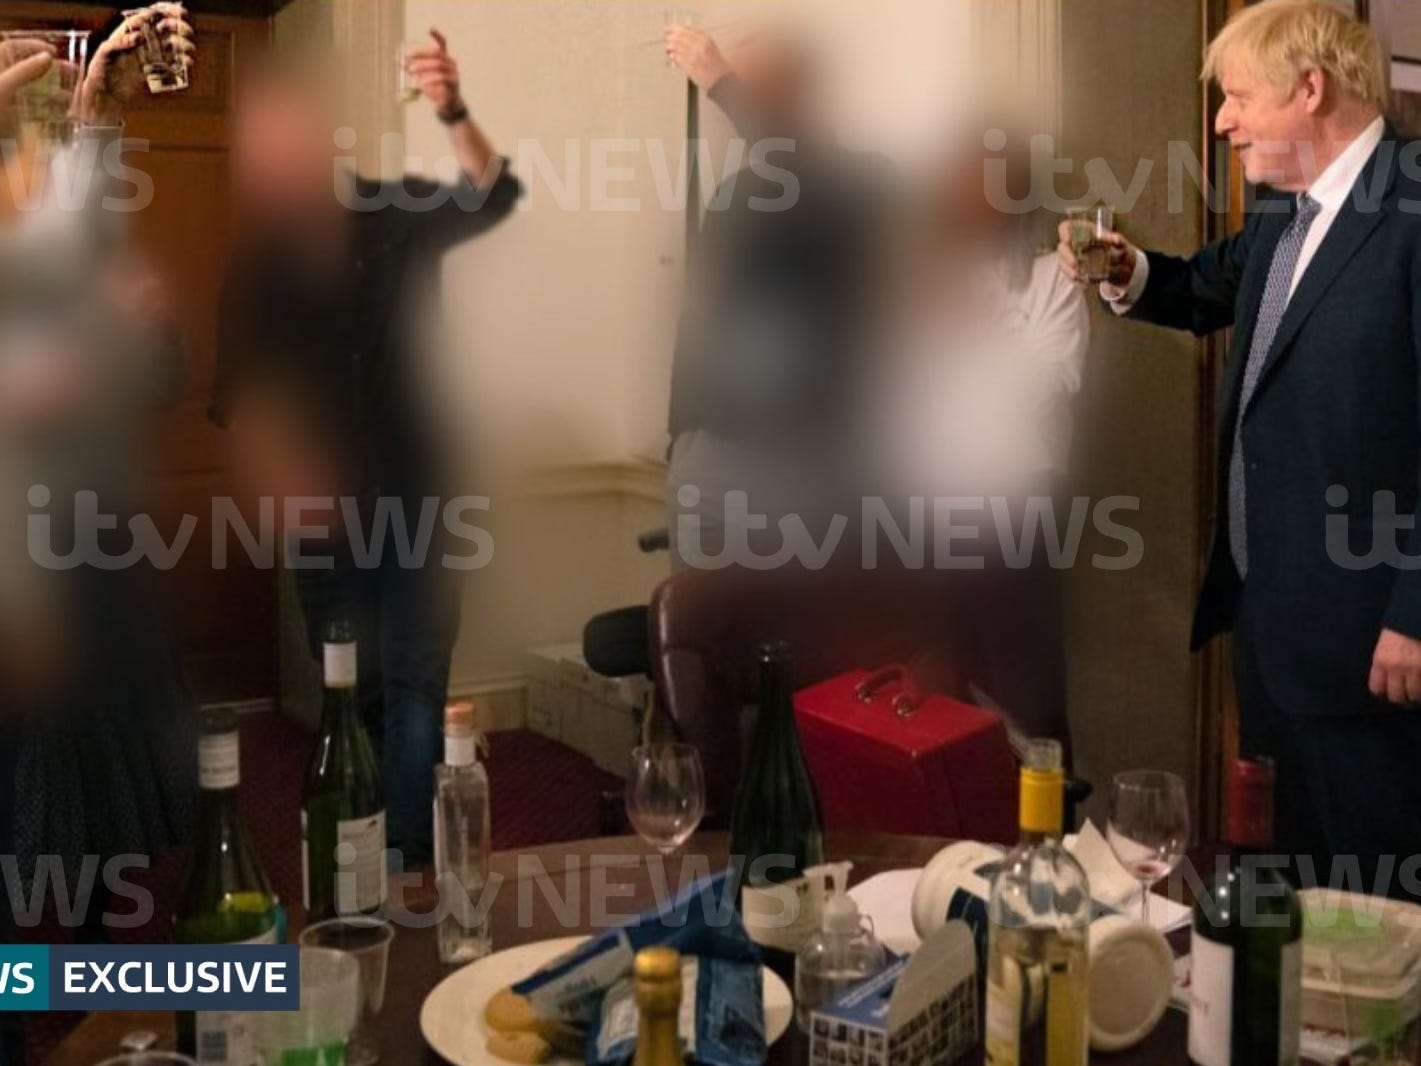 Sızan fotoğraflar, Boris Johnson'ın sokağa çıkma yasağını ihlal eden partide içtiğini gösteriyor